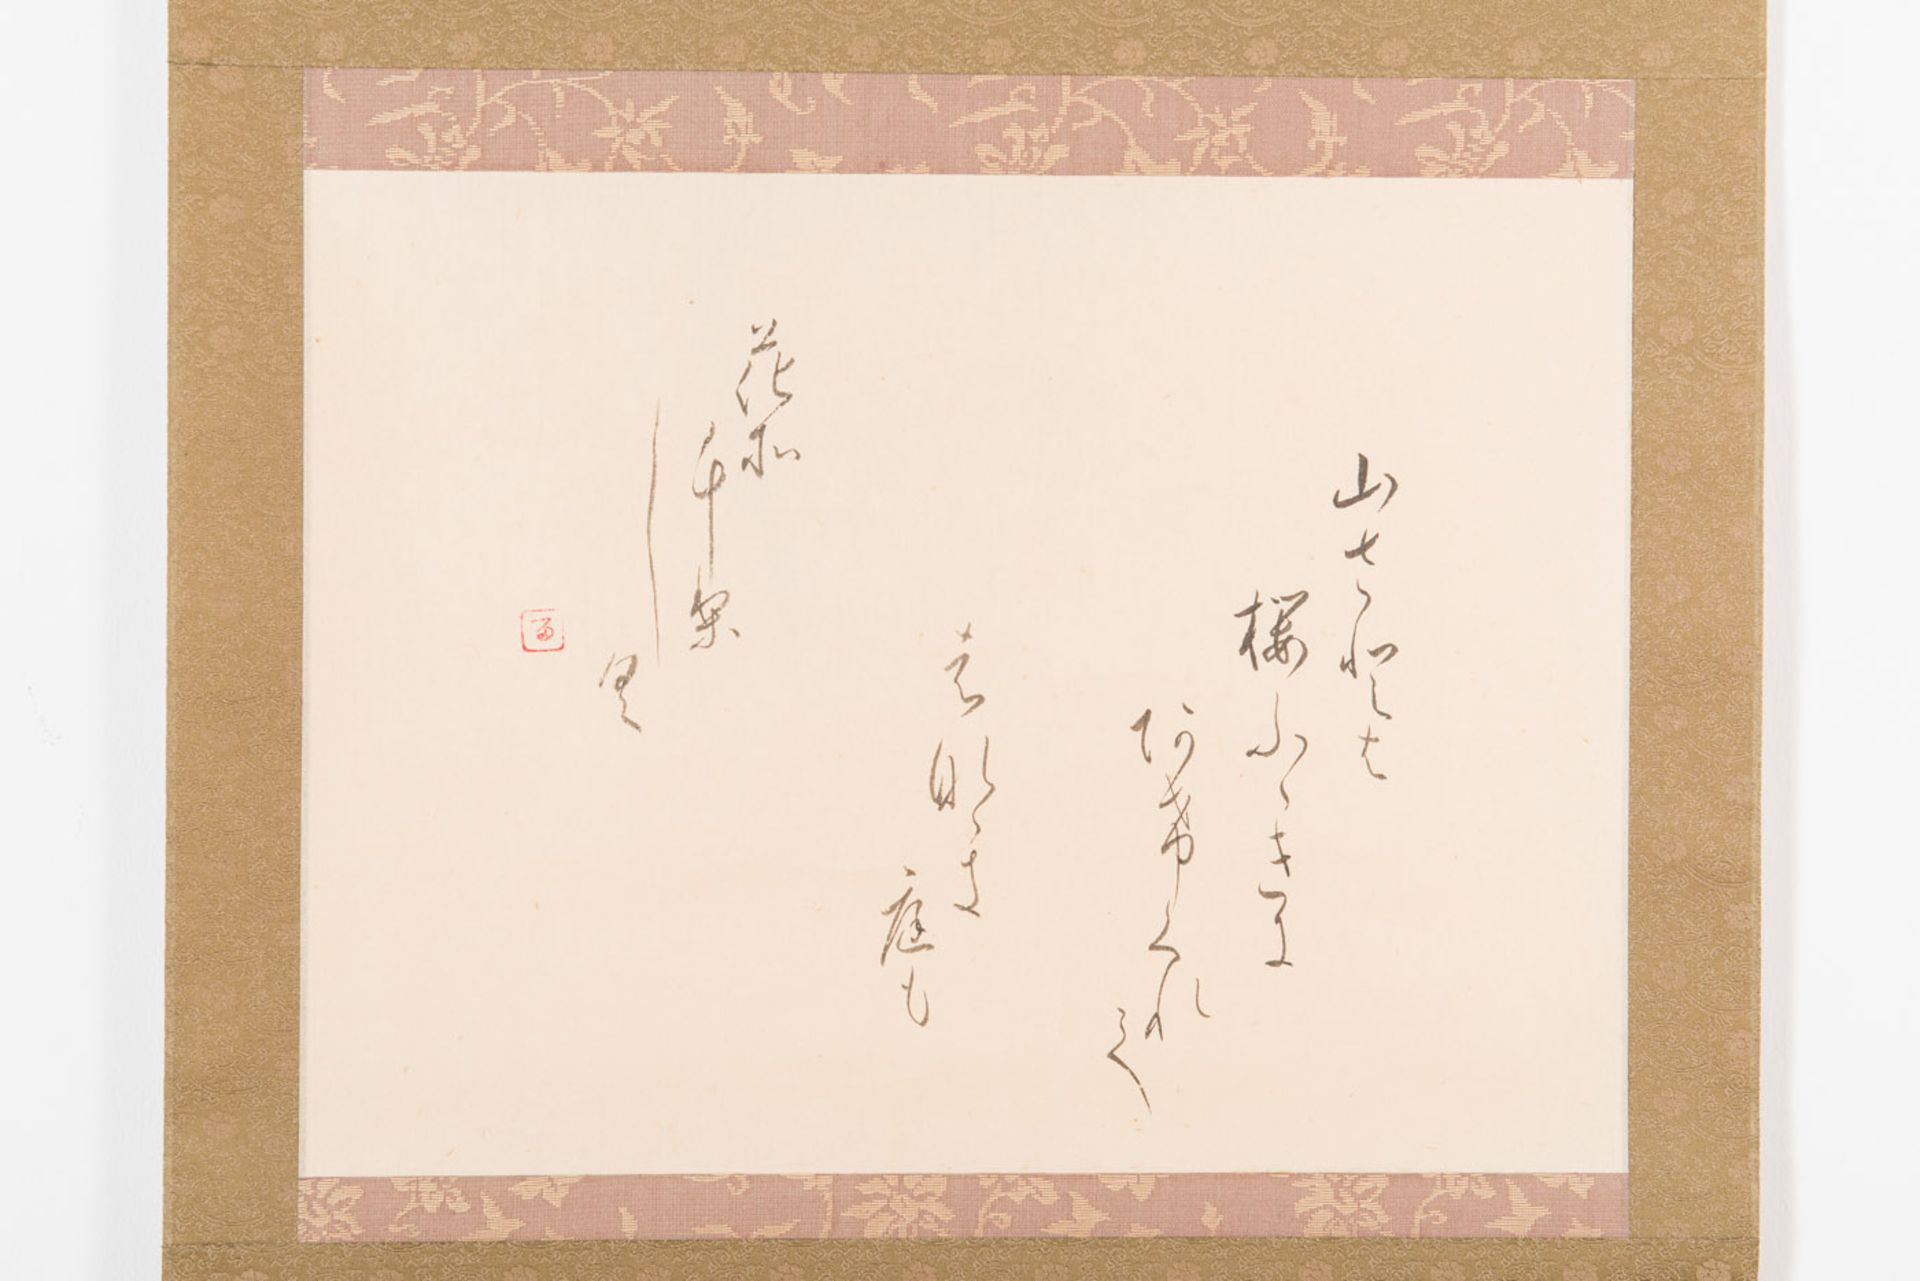 KALLIGRAFISCHES BI
Tusche auf Papier. Japan, 19. Jh.Die reine Bildfläche ist ein Querformat, in